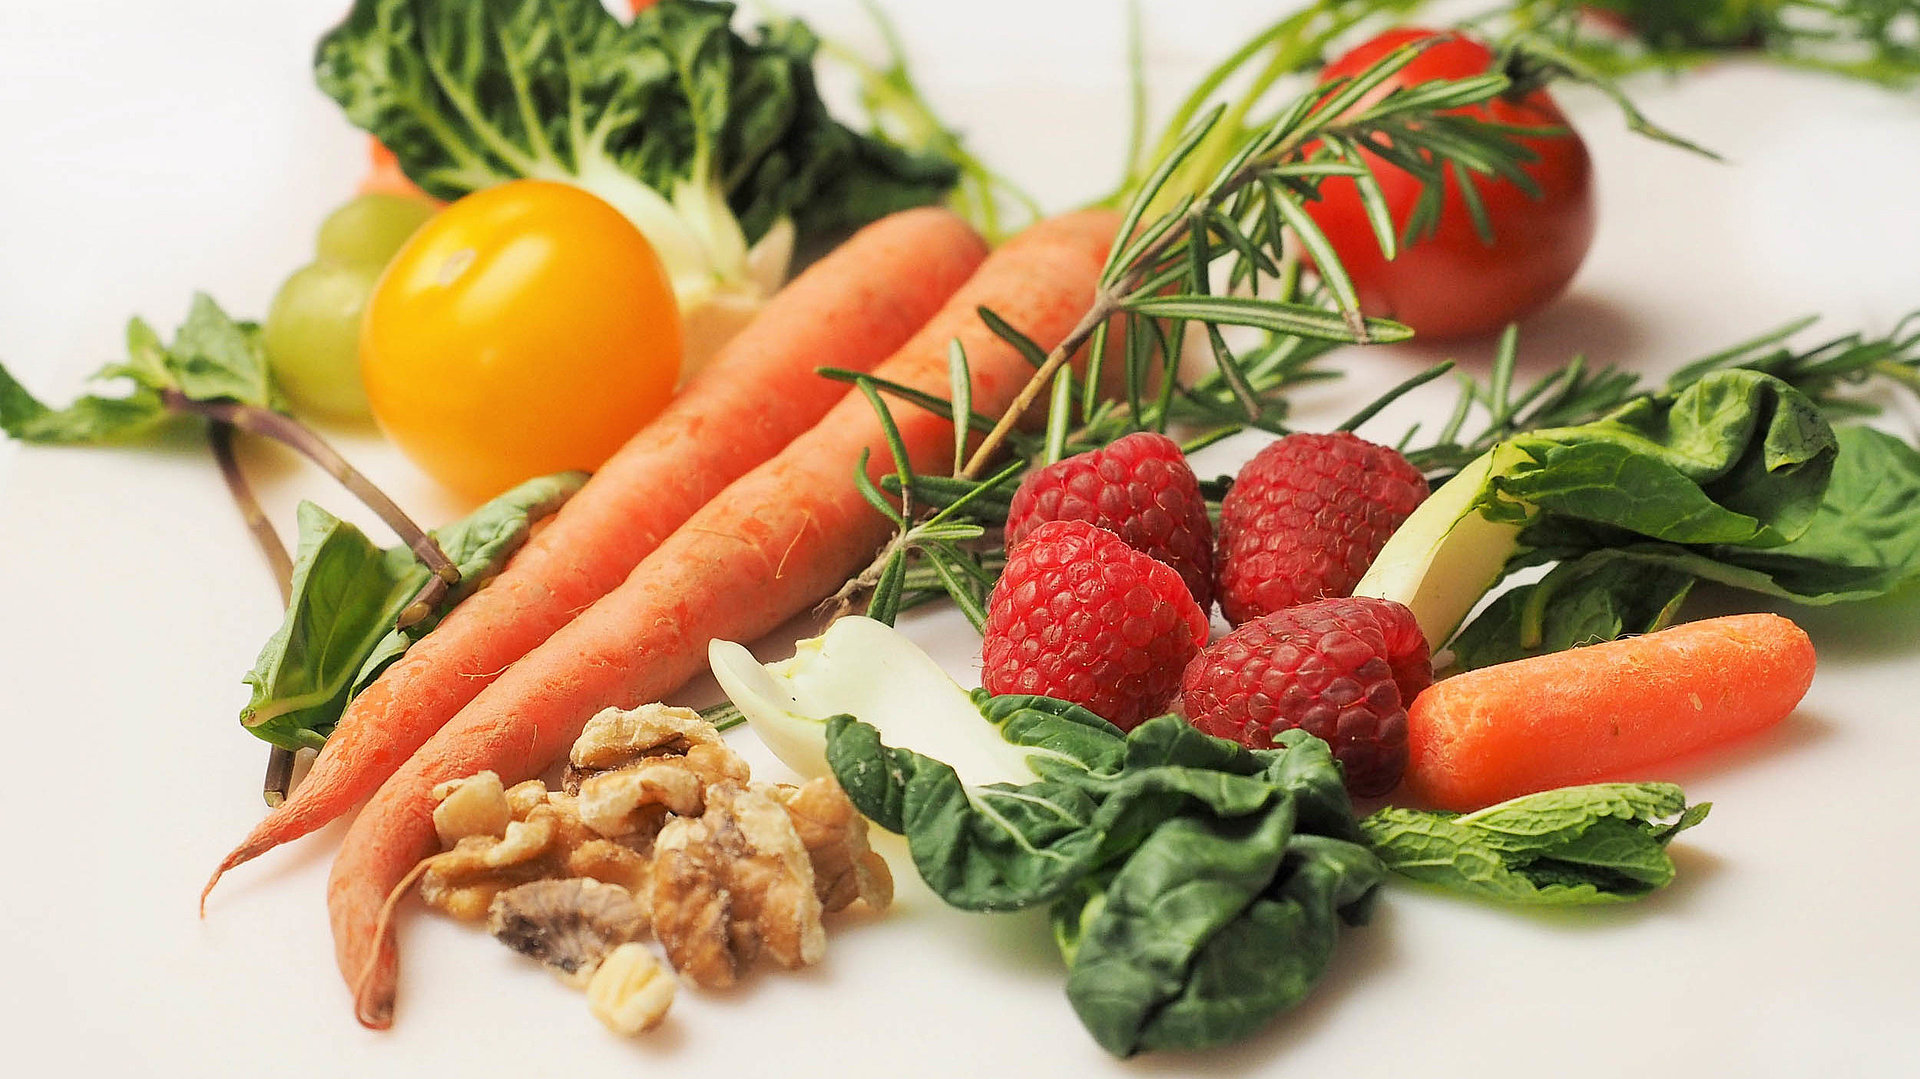 Regionale Erzeugnisse in Nürnberg - Einkaufen mit Regionalem Charme - Tisch gefüllt mit Gemüse wie Karotten, Kopfsalat, Erdbeeren und Walnüssen 